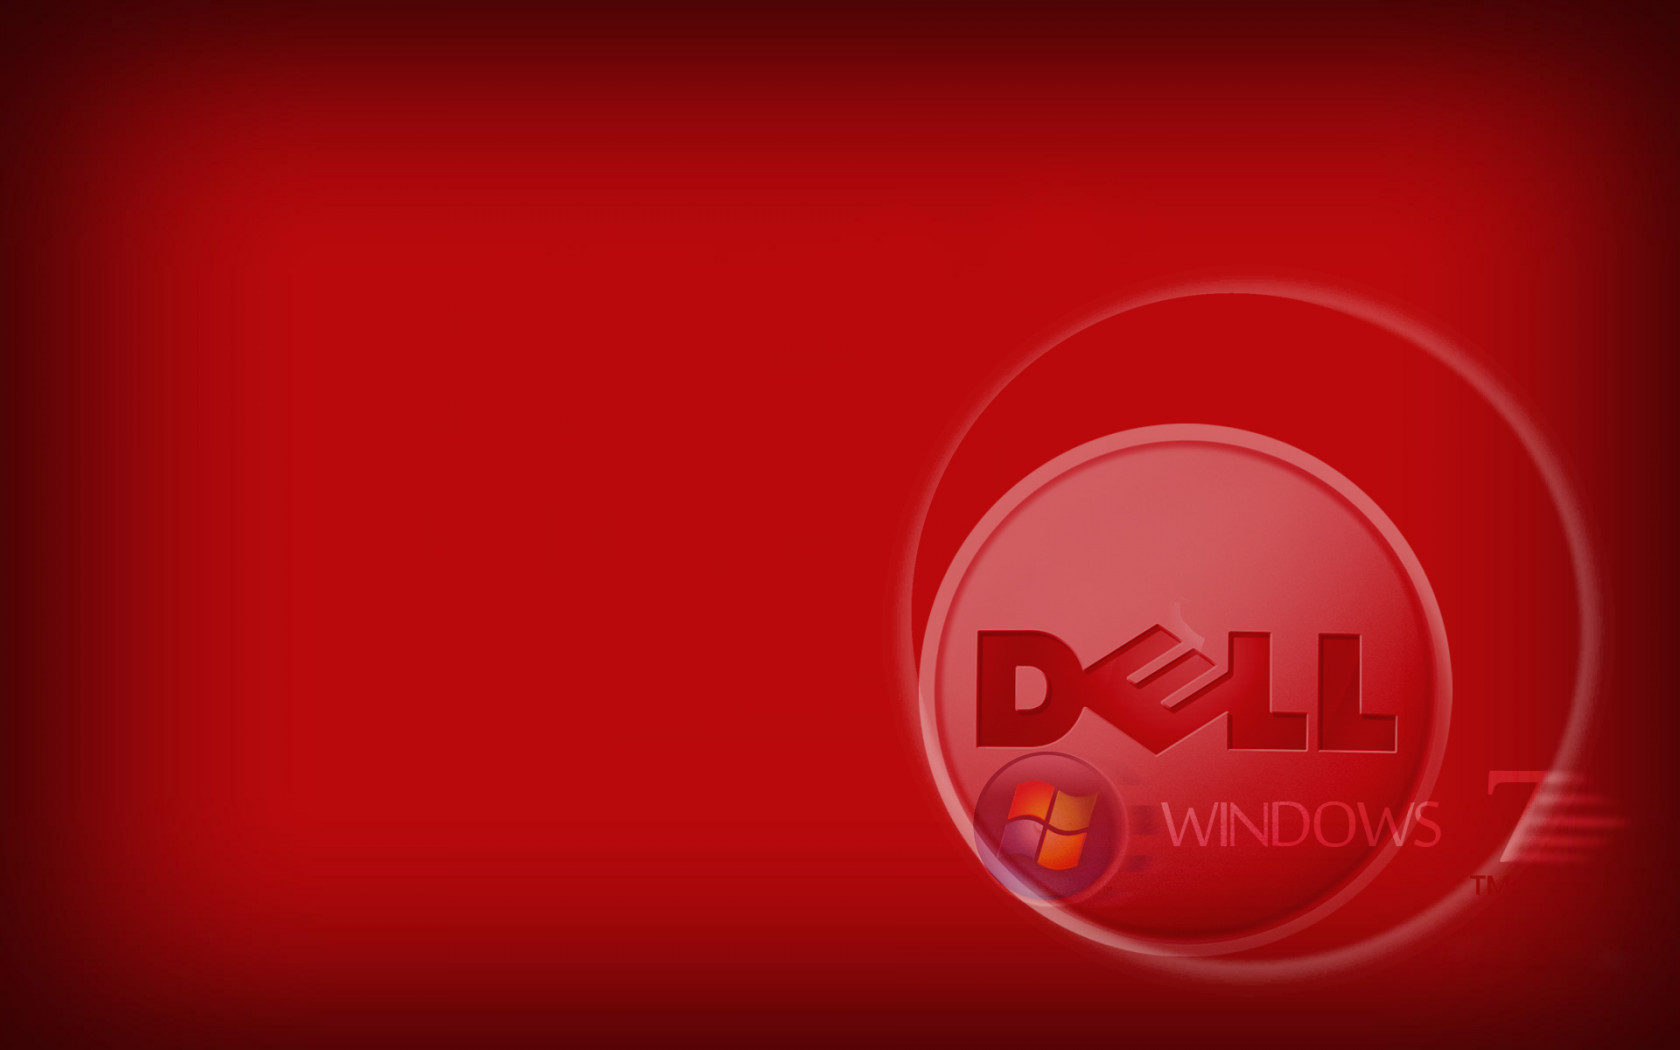 Windows7 for DeLL